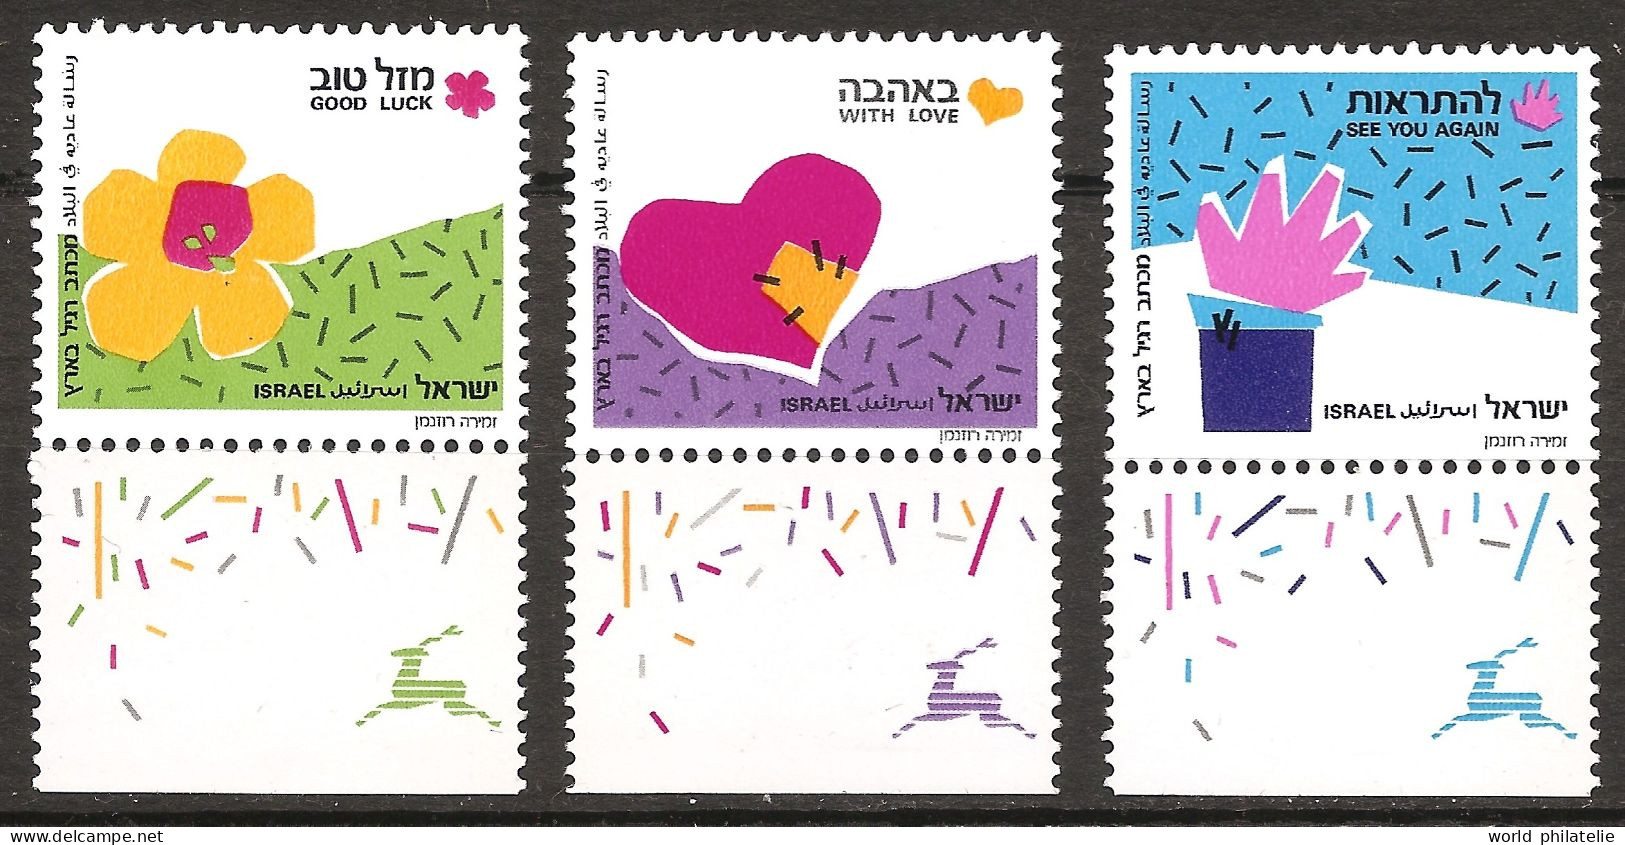 Israël Israel 1989 N° 1091 / 3 avec Tab ** Timbres De Souhait, Bonne Chance, Au Revoir, Amour, Fleur, Main, Cœur, Luck - Ungebraucht (mit Tabs)